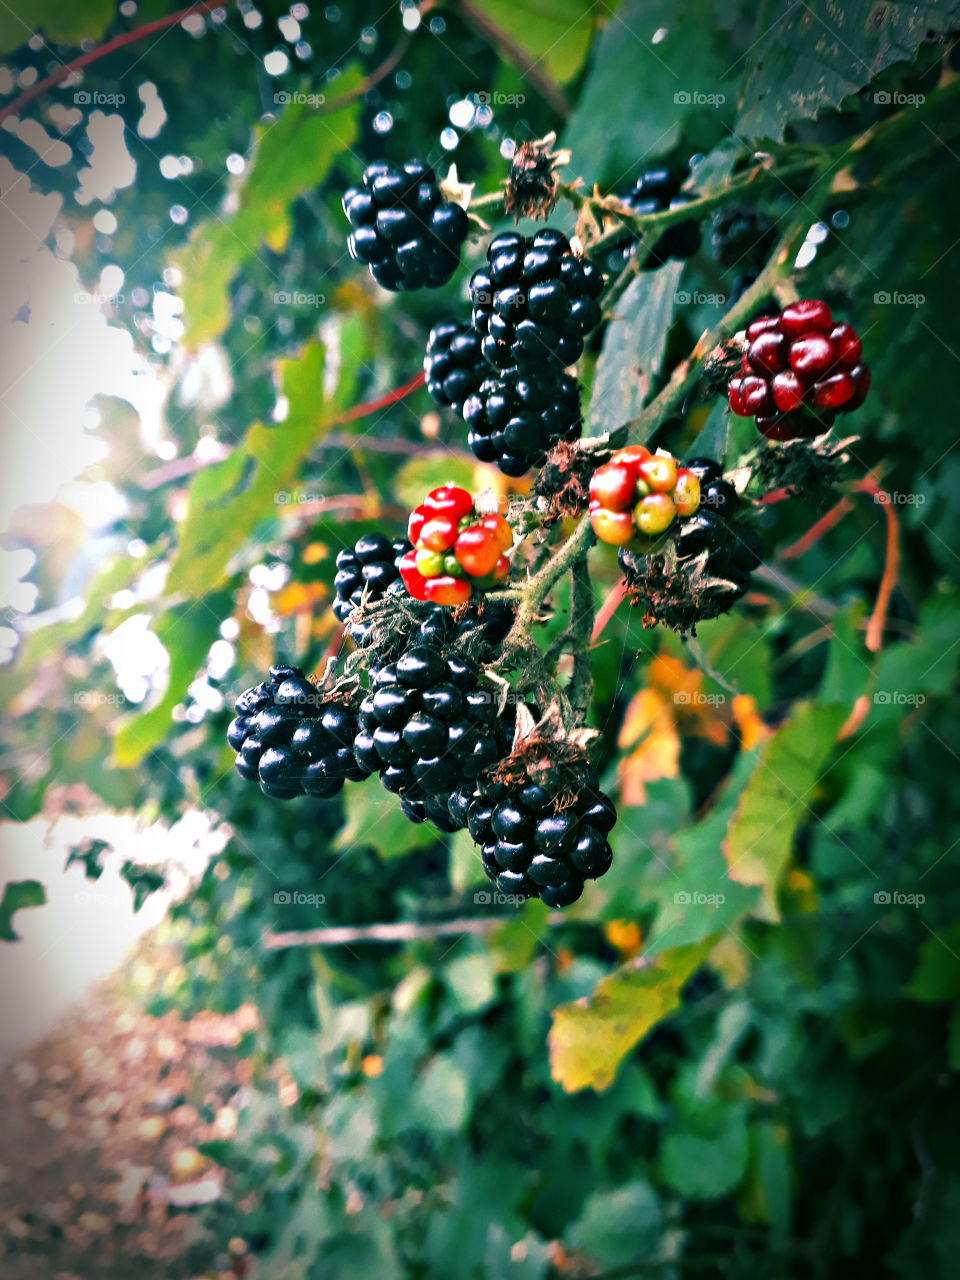 another blackberries